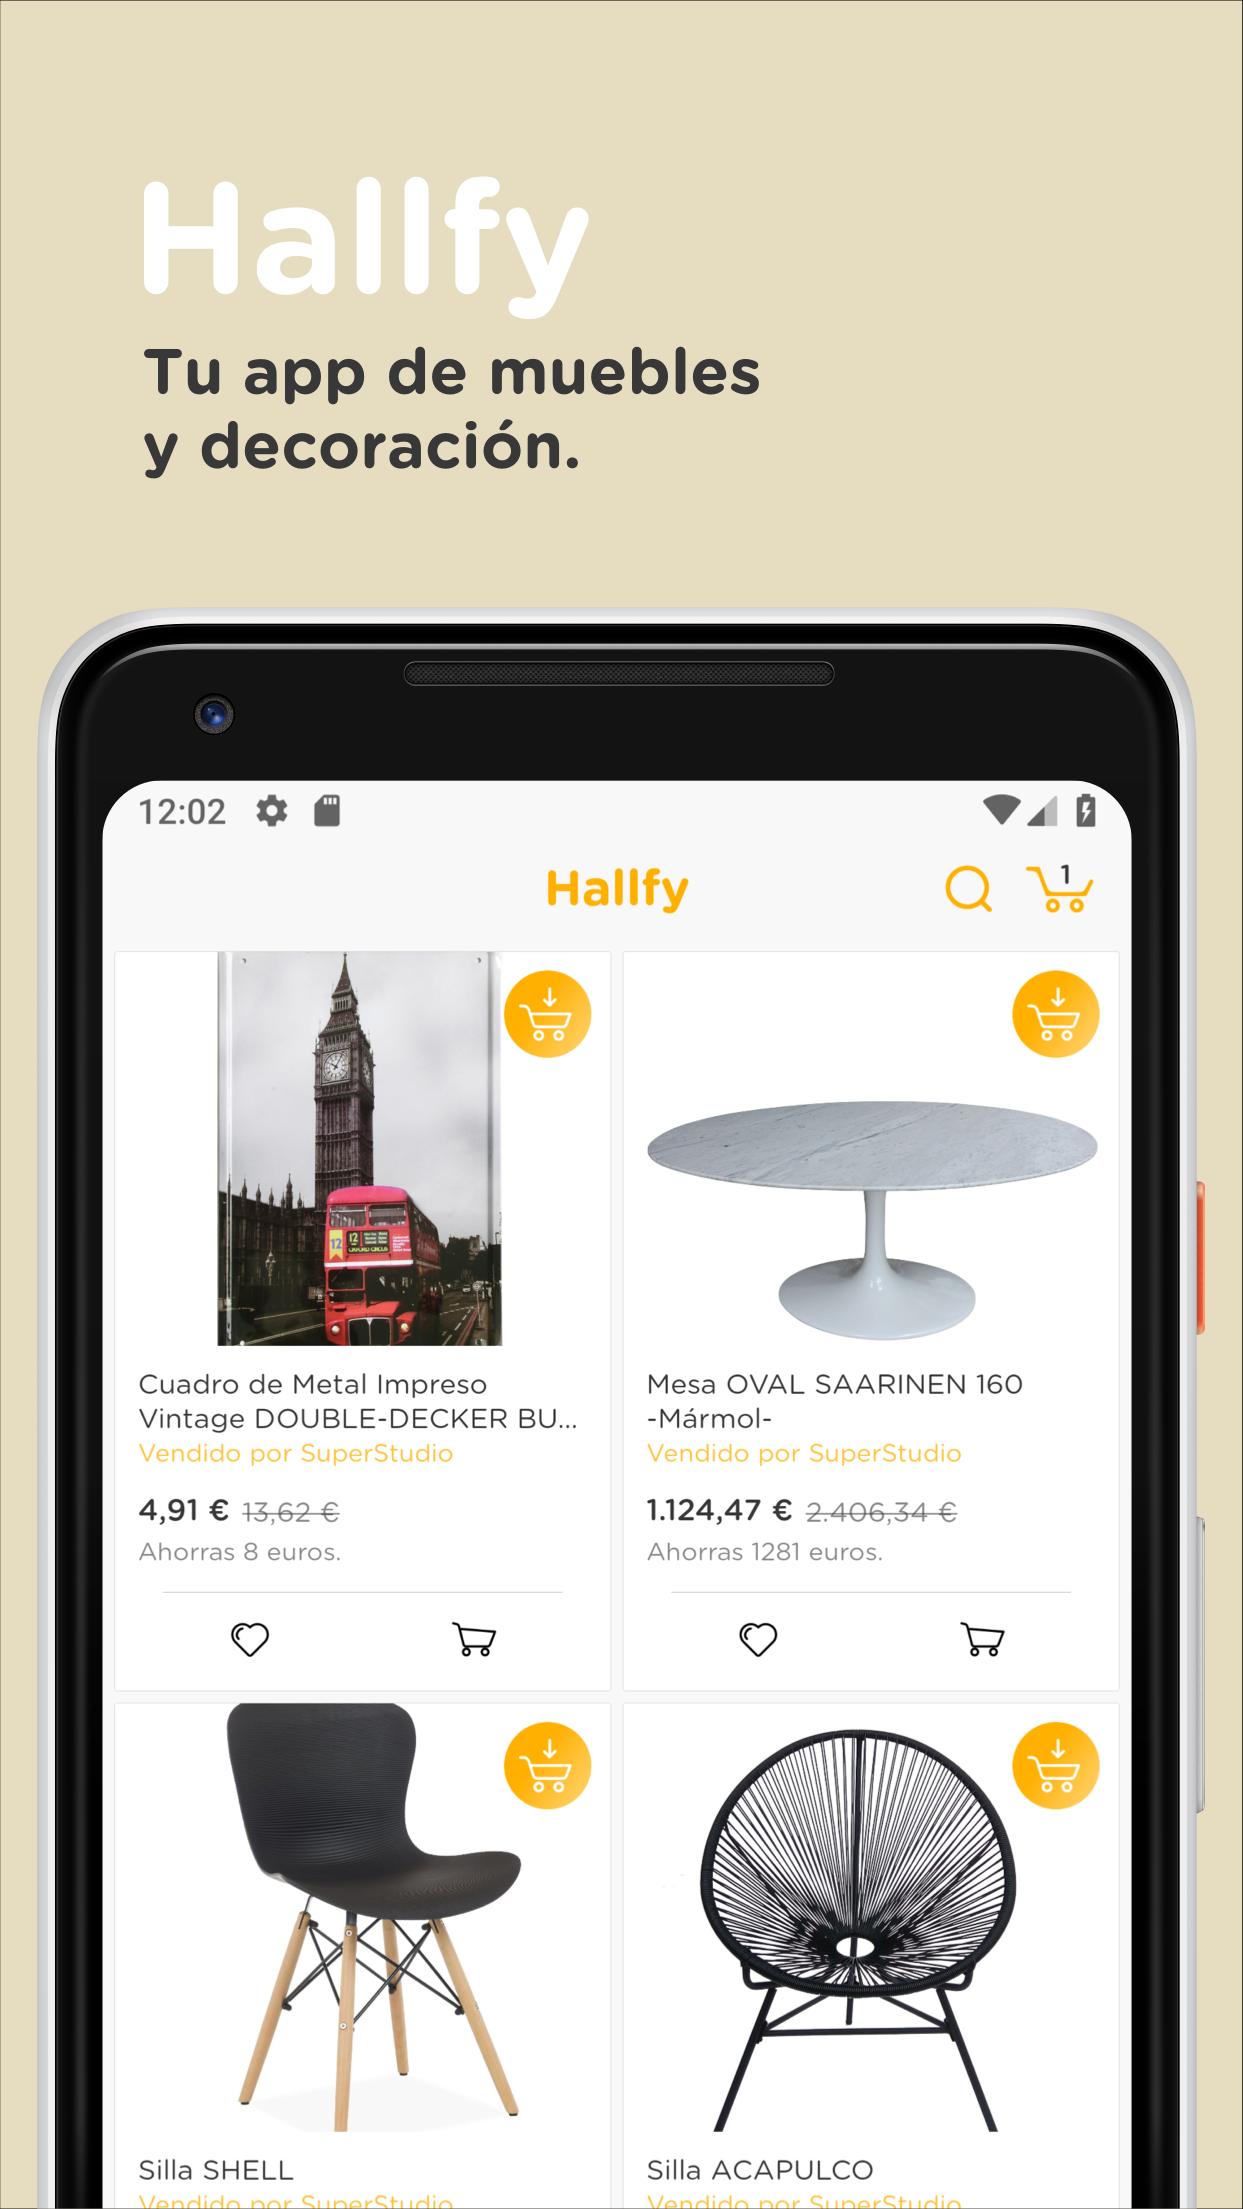 Hallfy For Android Apk Download - como ganhar robux de gra#U00e7a no pc 2019 ofertas empleo